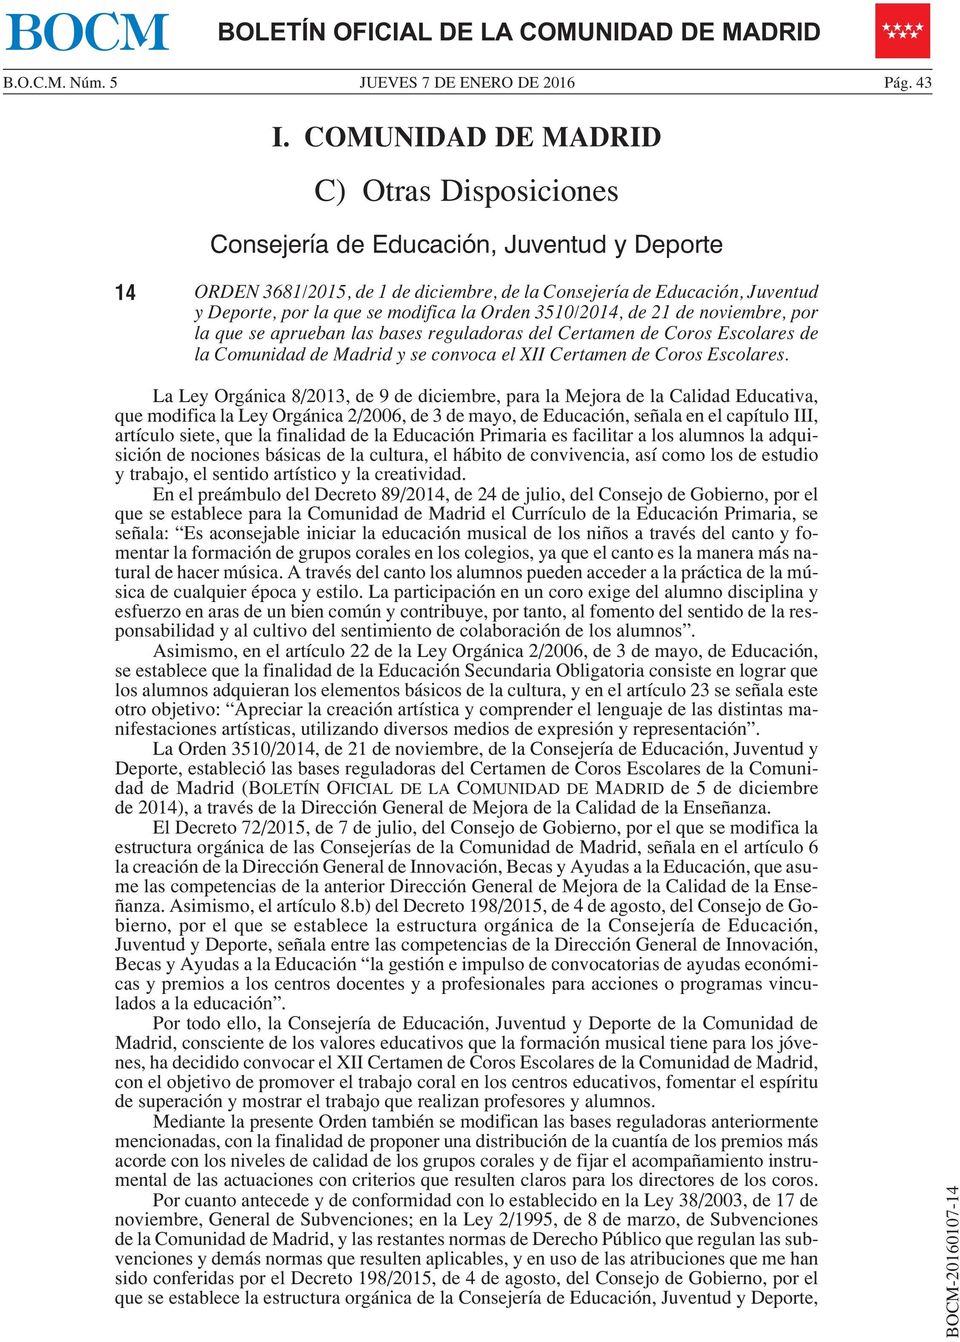 la Orden 3510/2014, de 21 de noviembre, por la que se aprueban las bases reguladoras del Certamen de Coros Escolares de la Comunidad de Madrid y se convoca el XII Certamen de Coros Escolares.